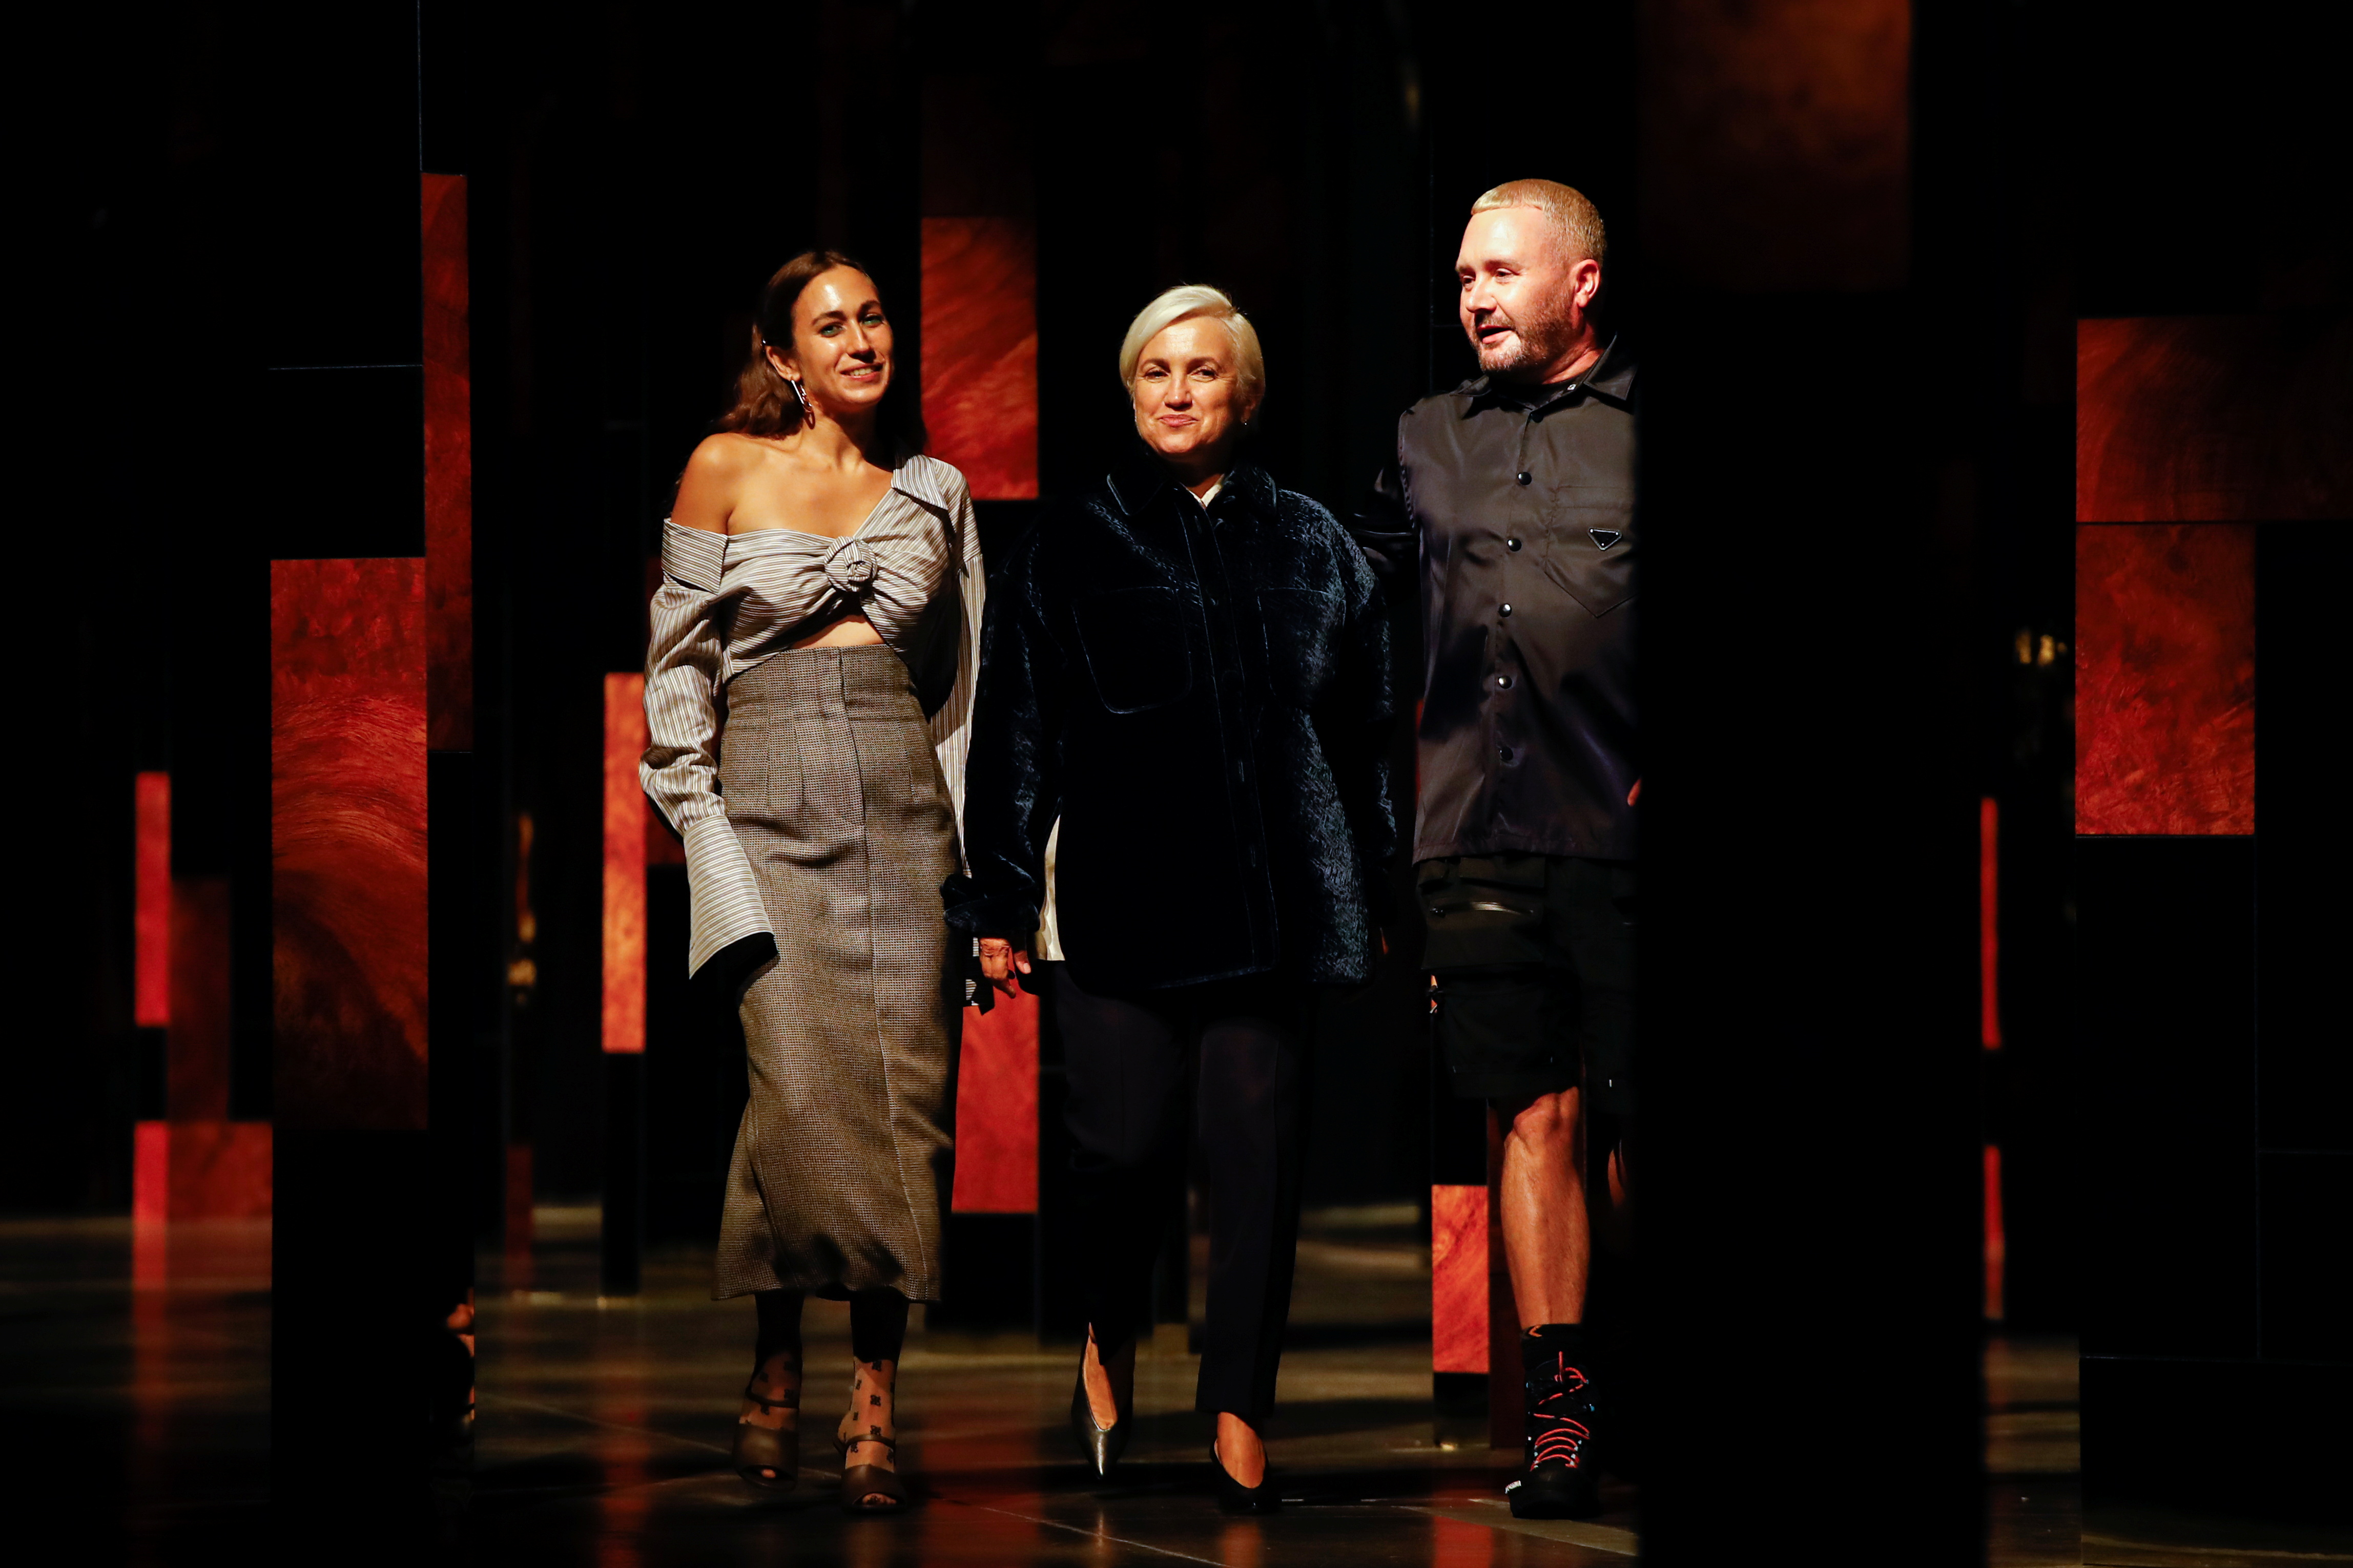 Los diseñadores Delfina Delettrez, Silvia Venturini Fendi y Kim Jones caminaron por la pasarela para cerrar la presentación de su nueva colección